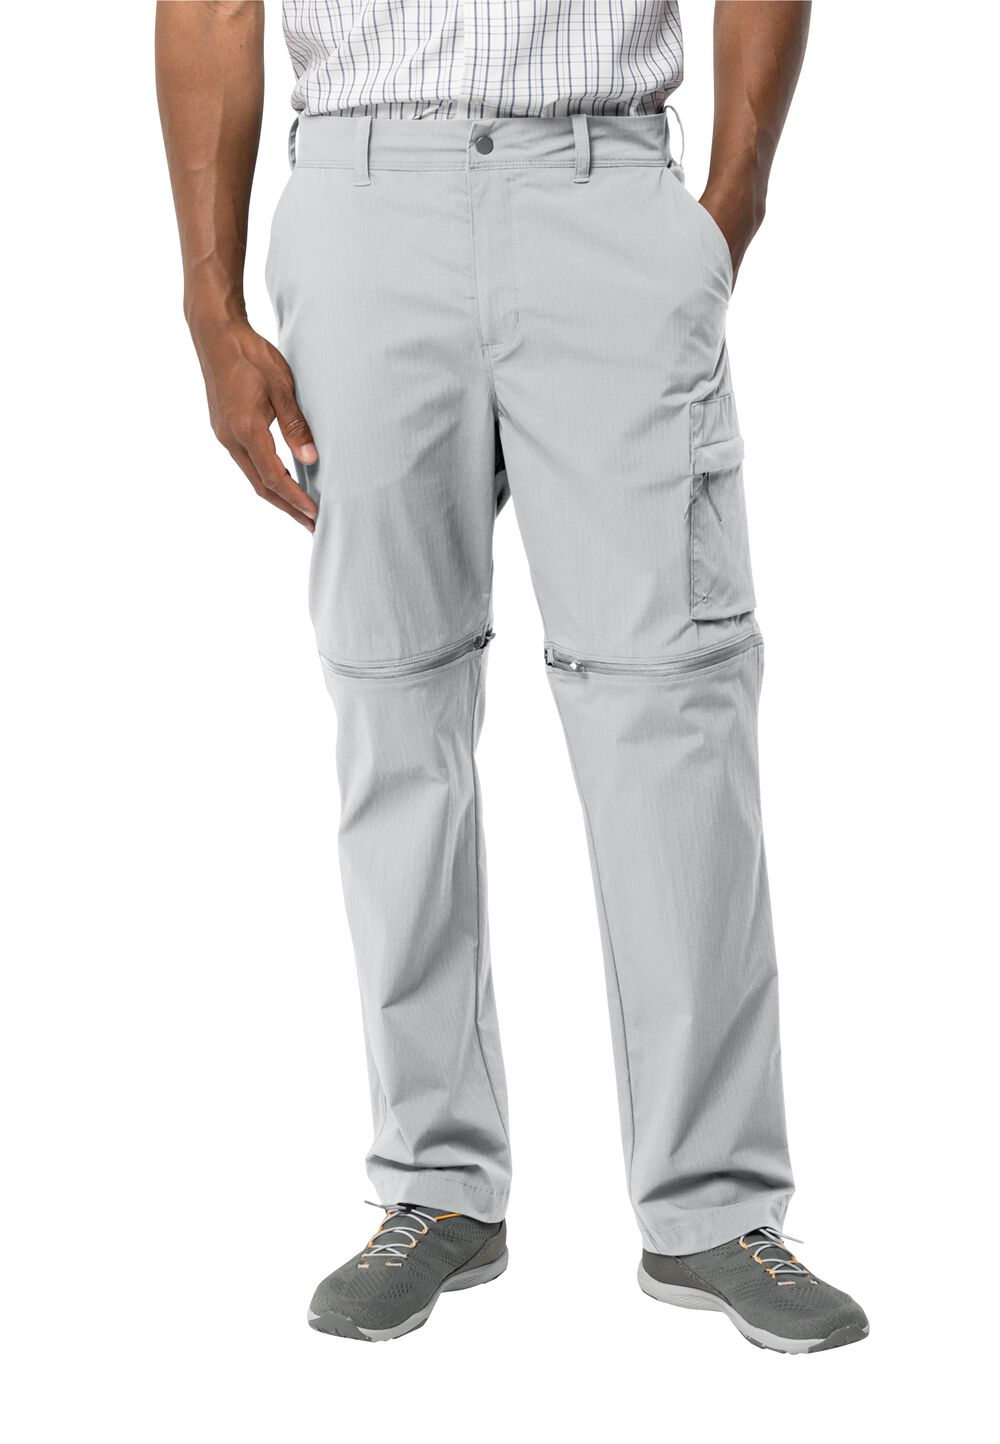 Jack Wolfskin Wanderthirst Zip Pants Men Zip-Off-broek Heren 48S grijs cool grey